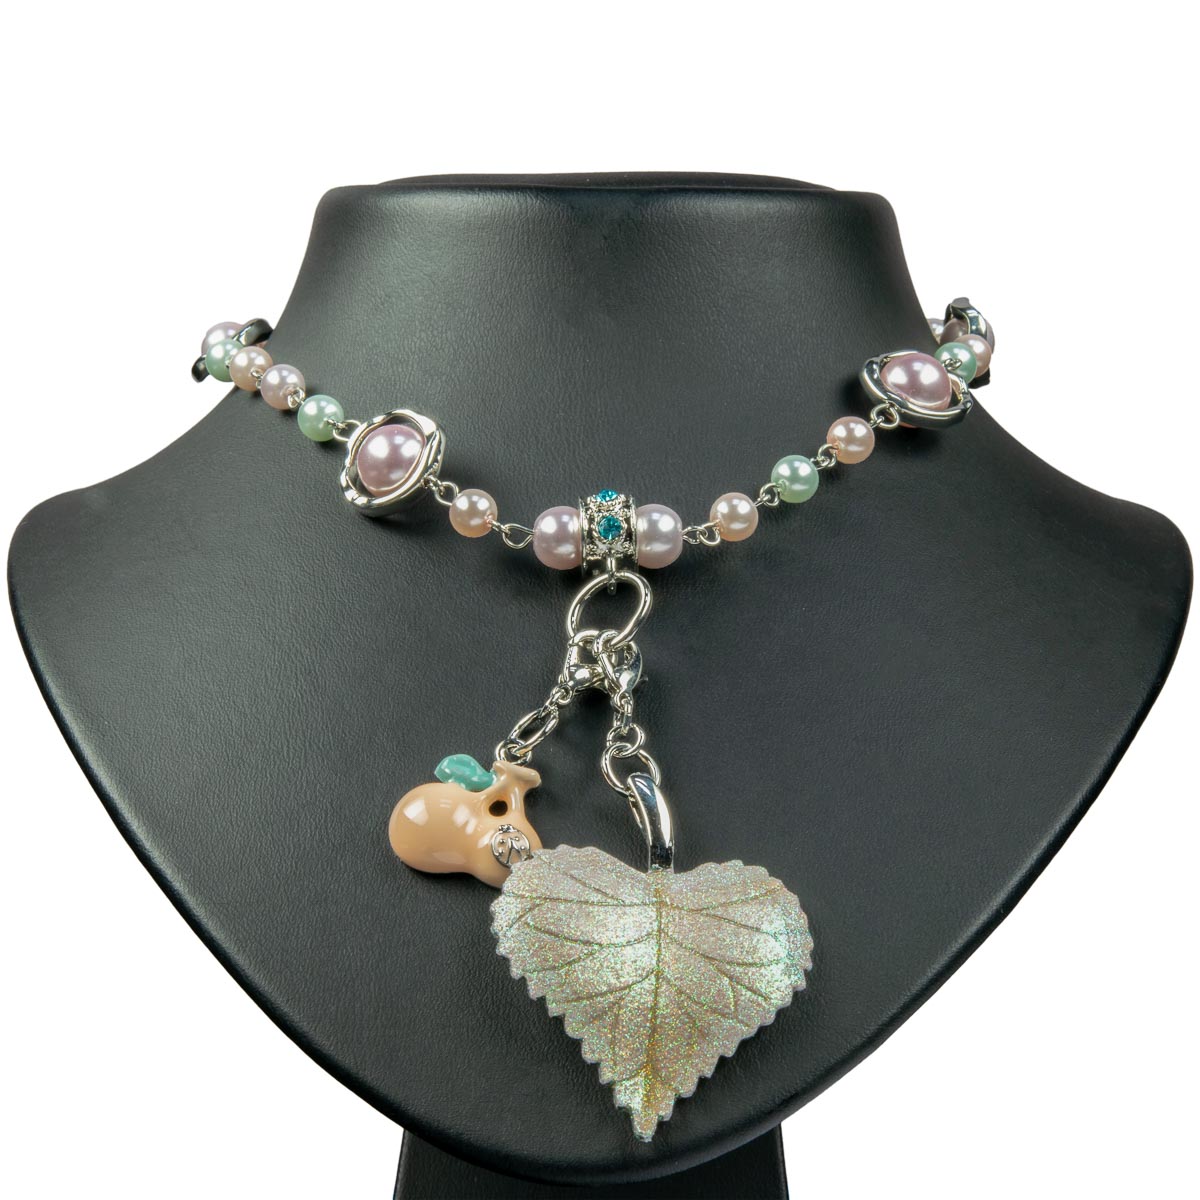 K.V. Fuchs Design Schmuck Damen Halskette in silber mit Anhängern Blatt und Kirschen, Perlen in beige, grün, rosa und Zirkonia in blau »K-3004«